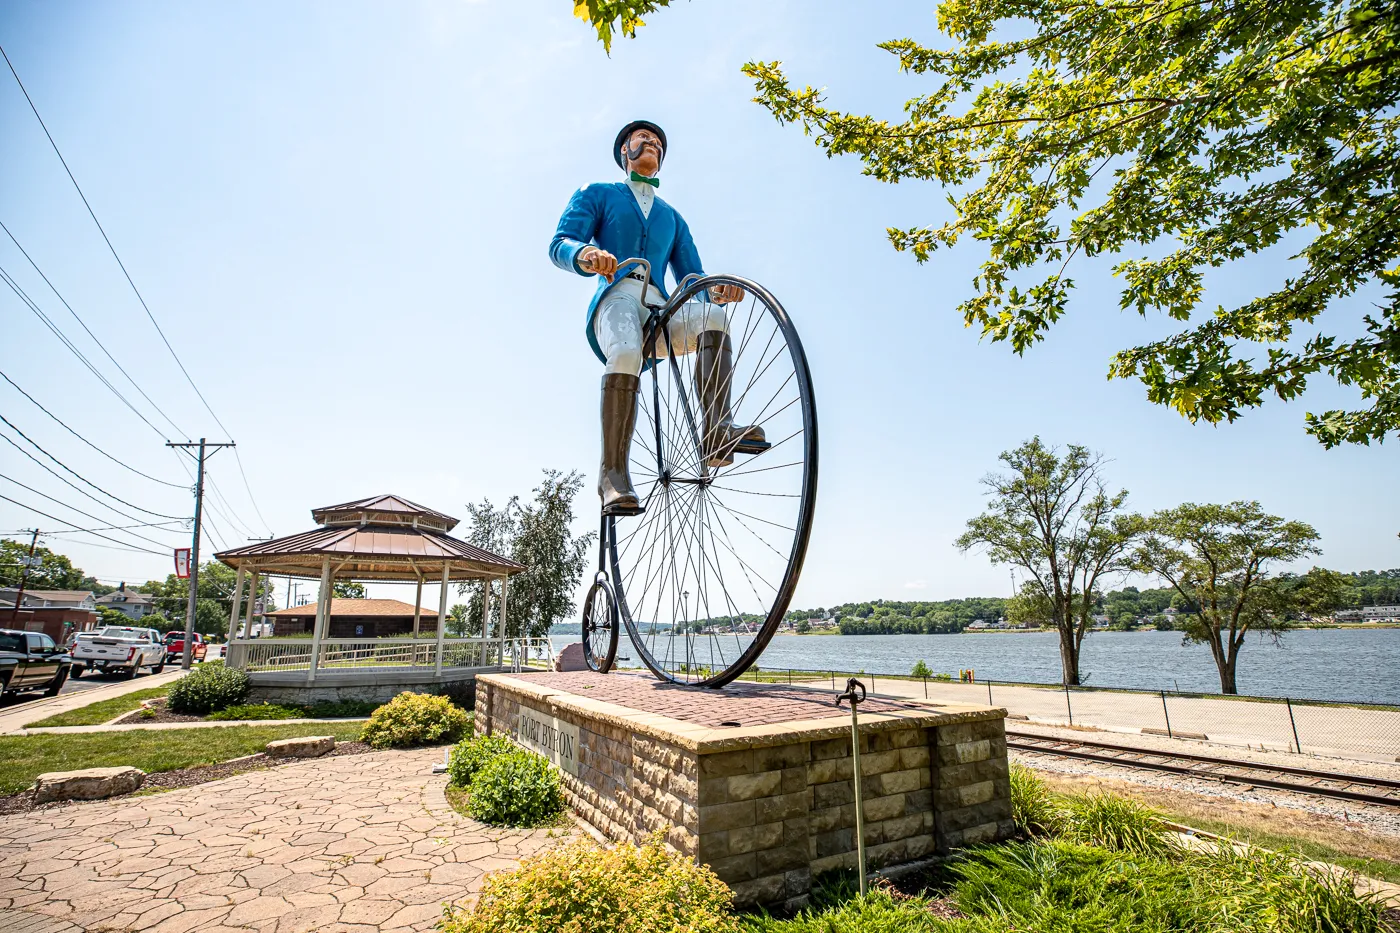 Will B. Rolling - Fiberglass Bicyclist in Port Byron, Illinois